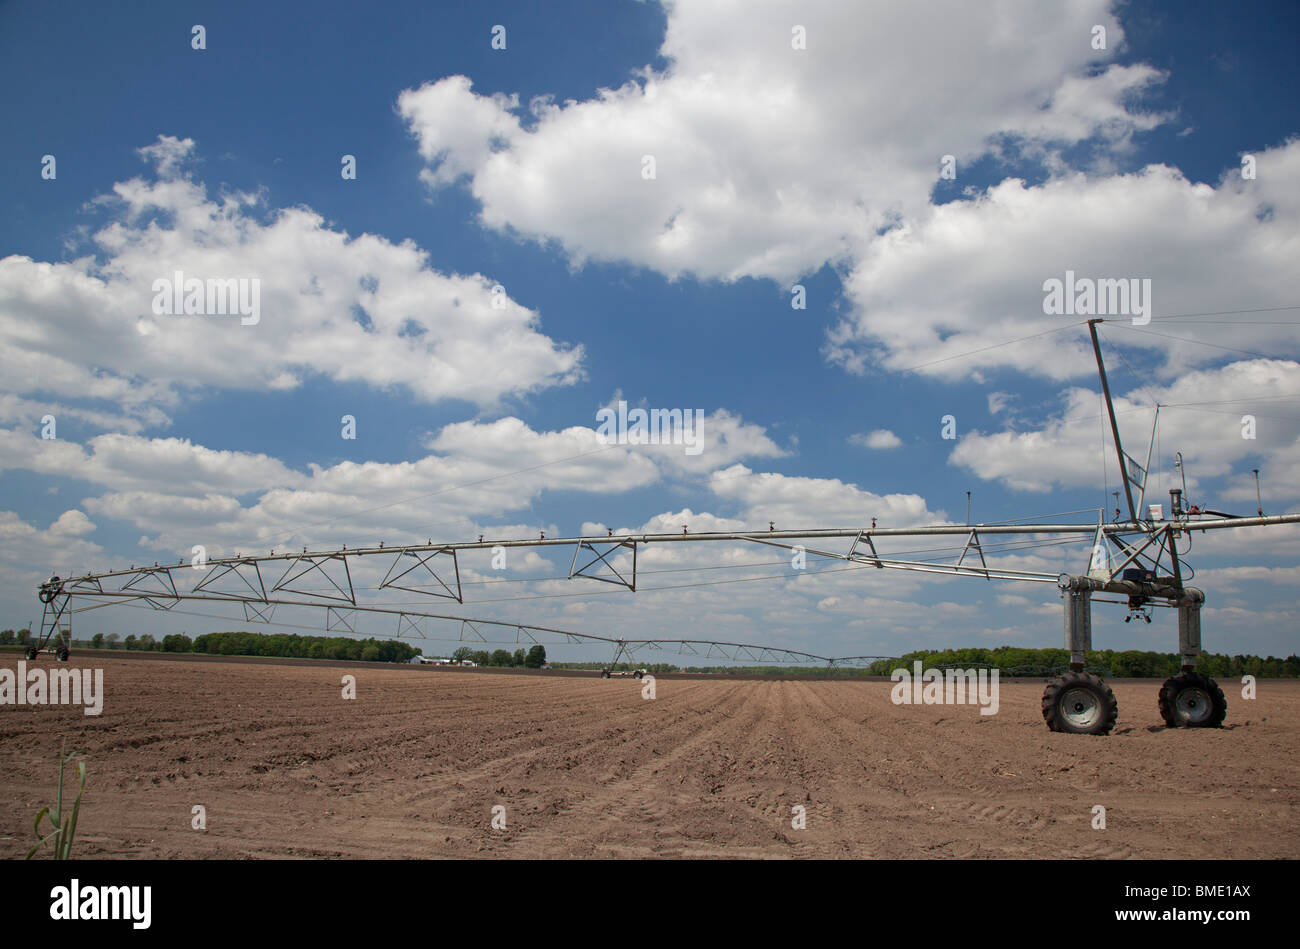 Blanchard, Michigan - impianti di irrigazione in una fattoria in Western Michigan. Foto Stock